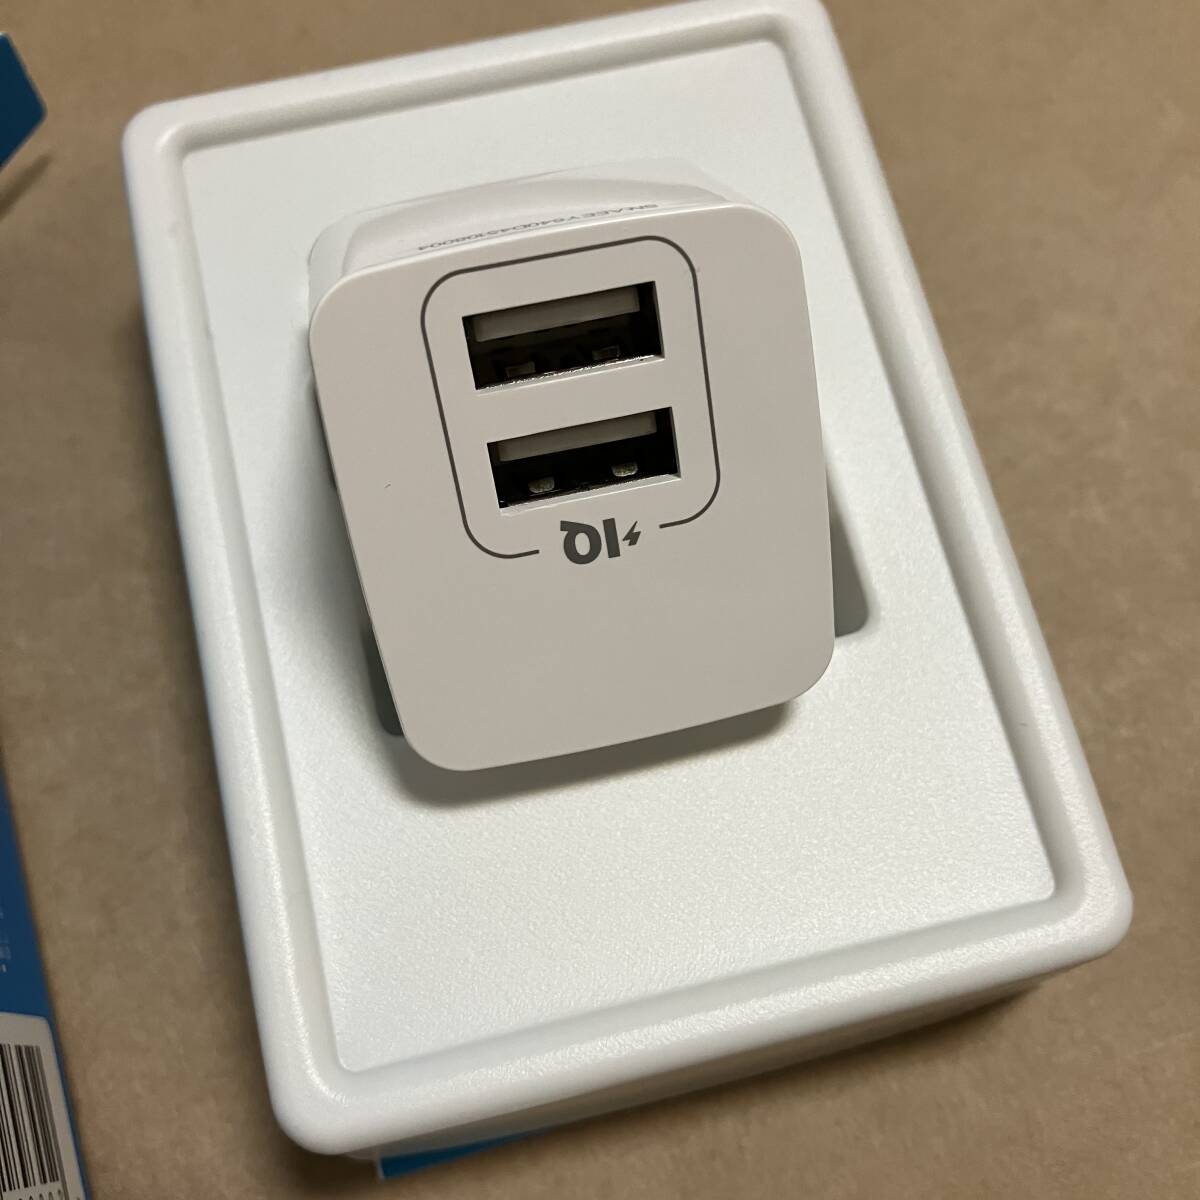 保管品 Anker USB-A 充電器 コンパクト設計の画像2